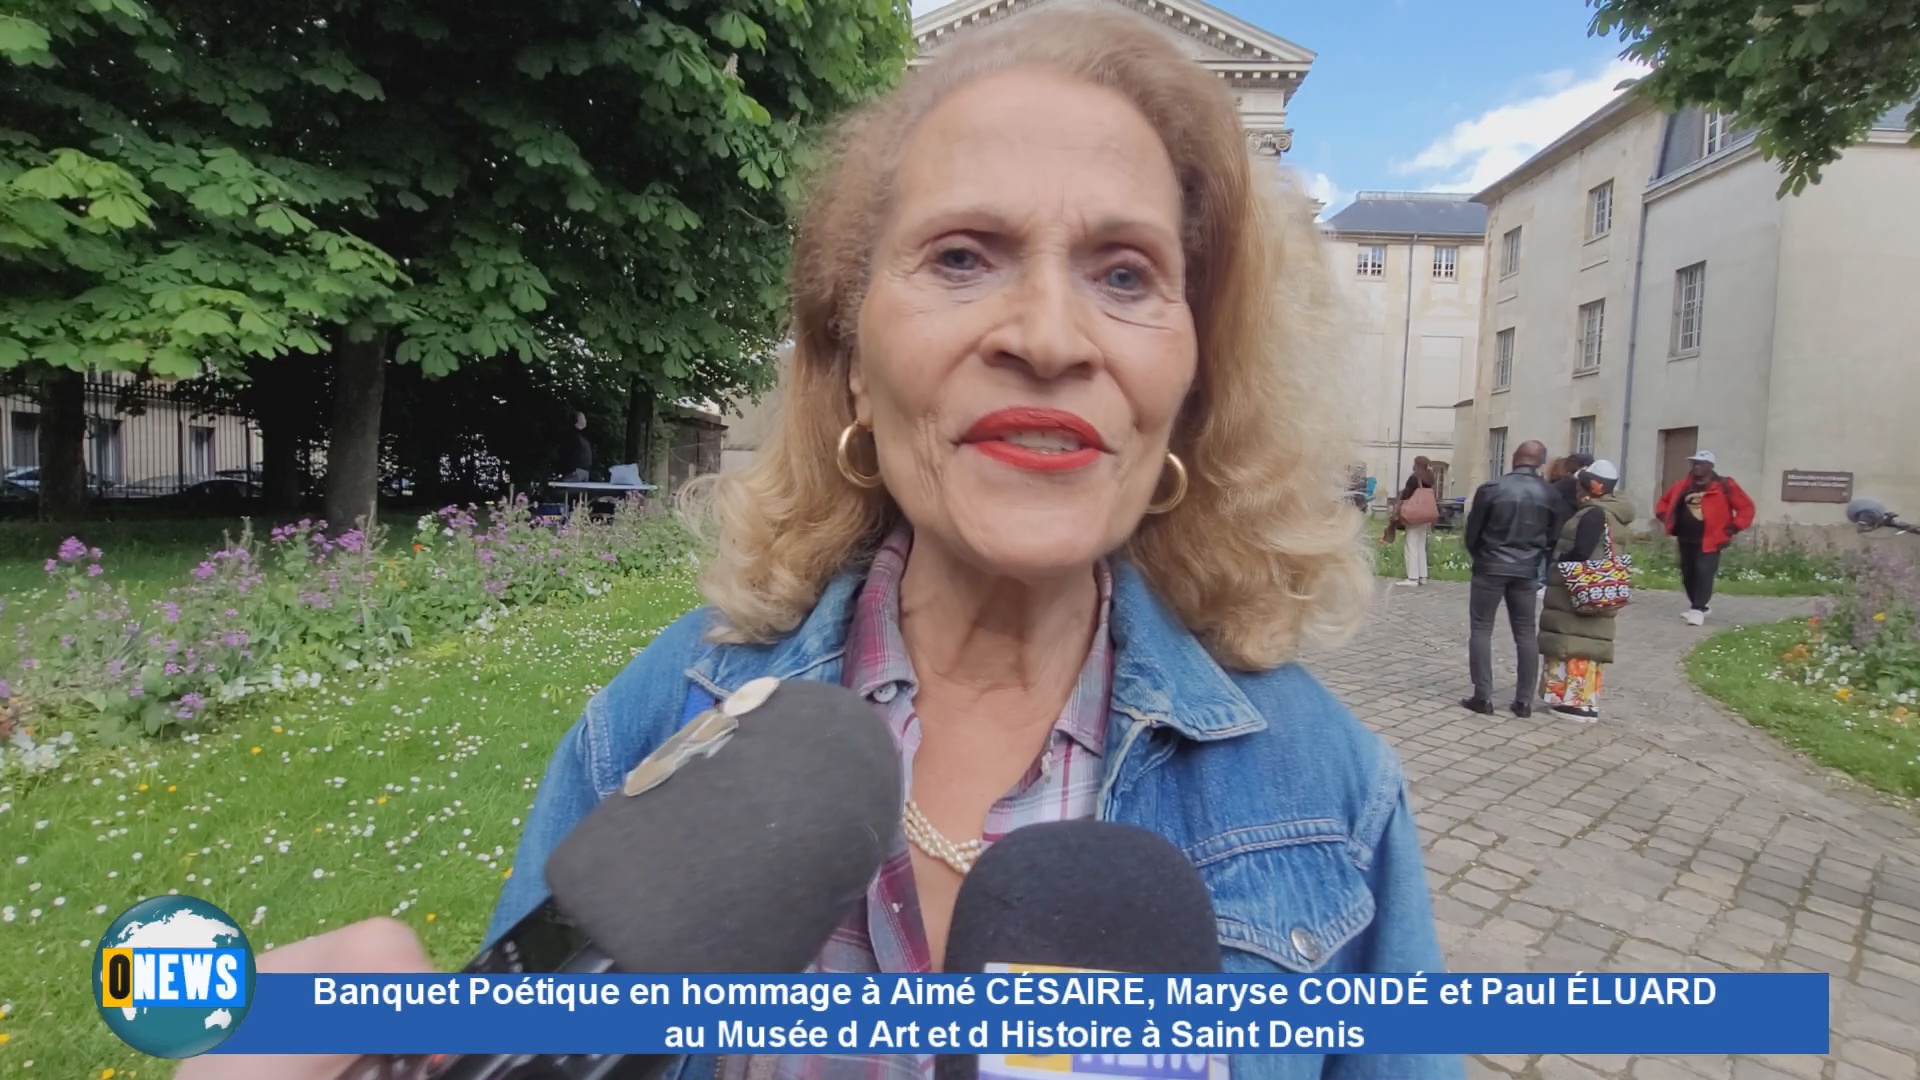 Banquet poétique en hommage à Aimé CÉSAIRE, Maryse CONDÉ et Paul ÉLUARD à Saint Denis